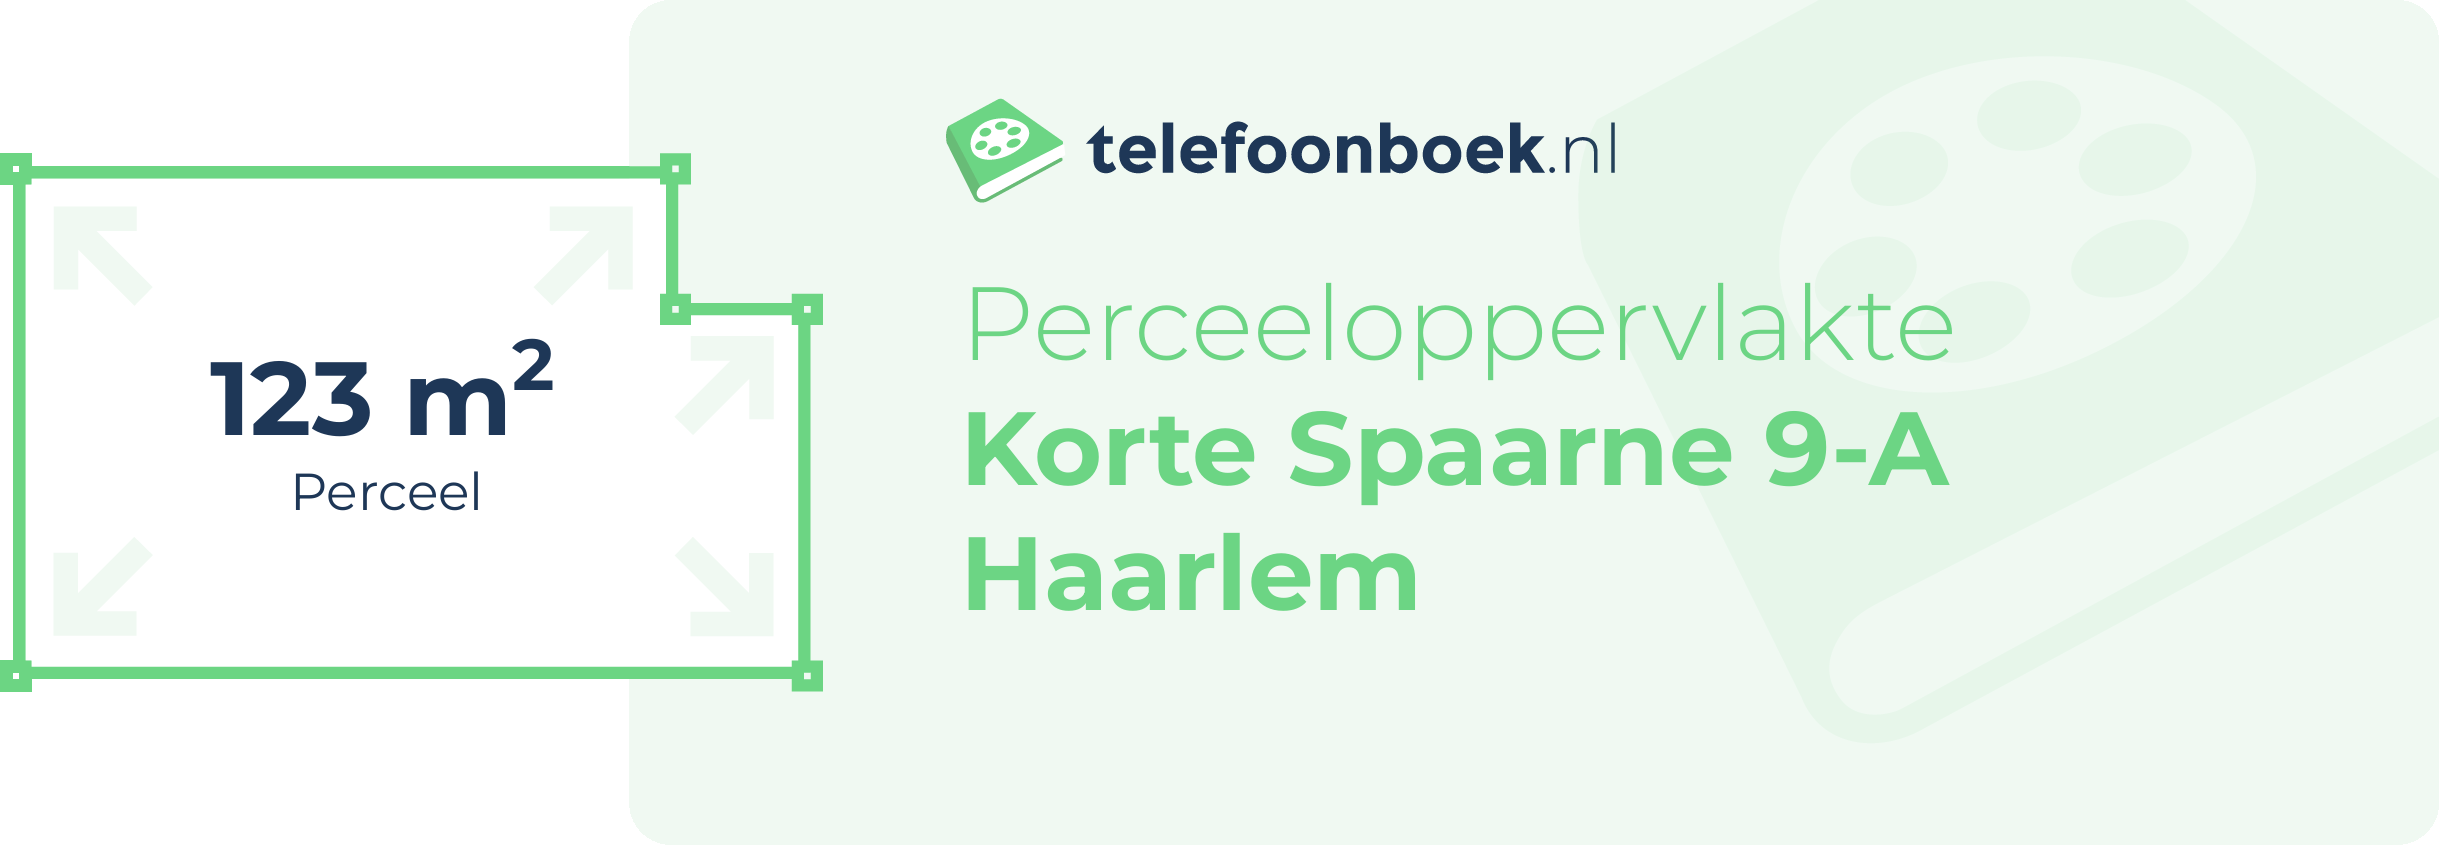 Perceeloppervlakte Korte Spaarne 9-A Haarlem